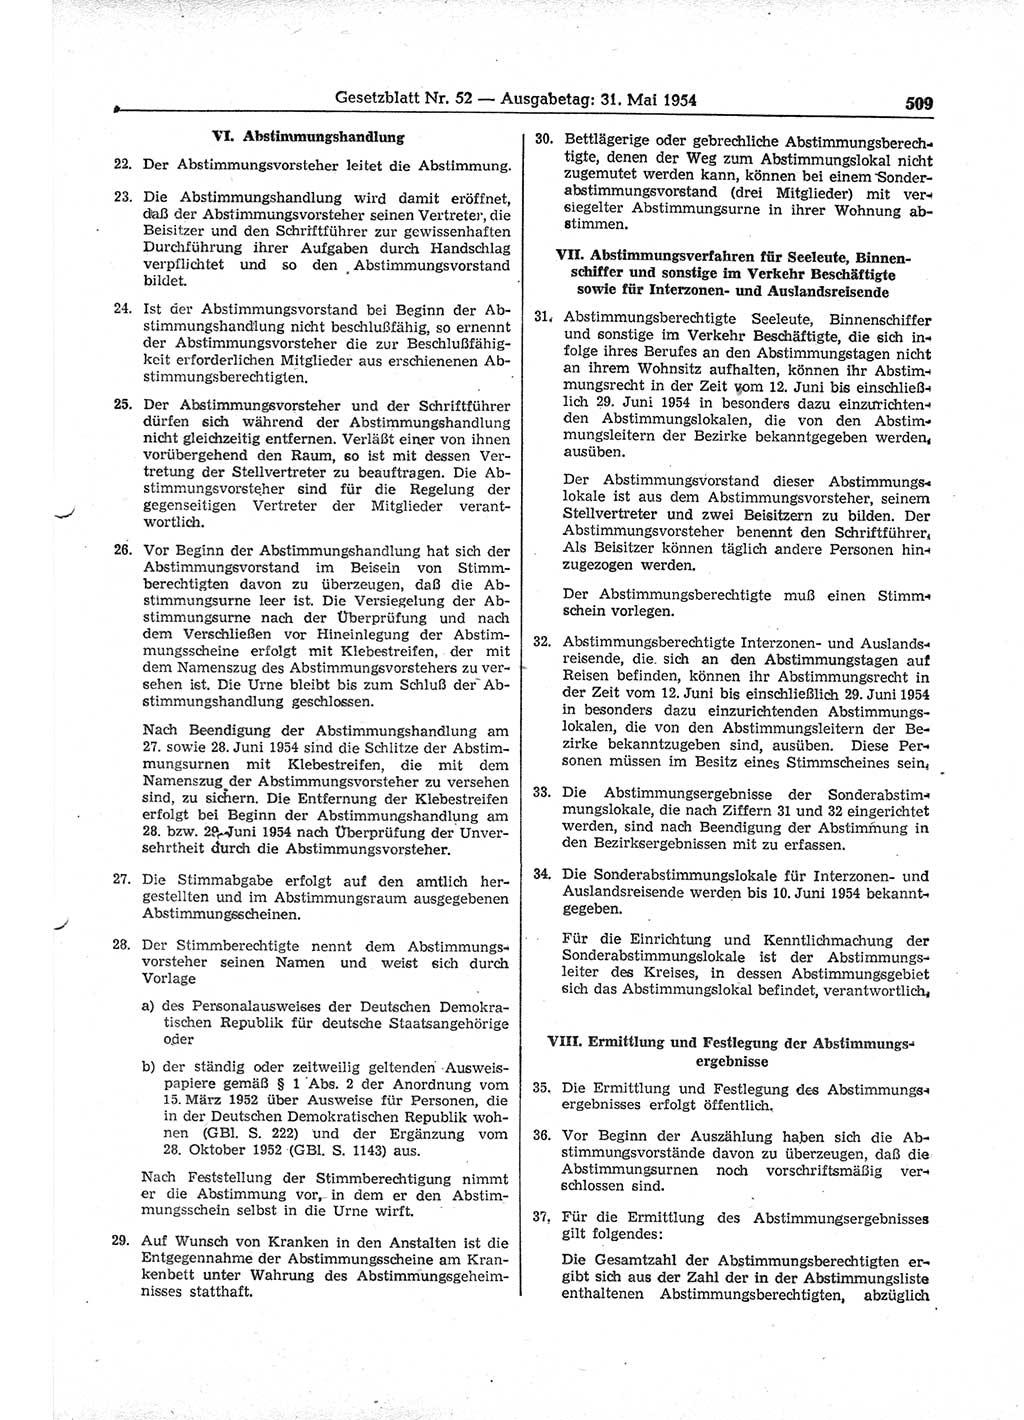 Gesetzblatt (GBl.) der Deutschen Demokratischen Republik (DDR) 1954, Seite 509 (GBl. DDR 1954, S. 509)